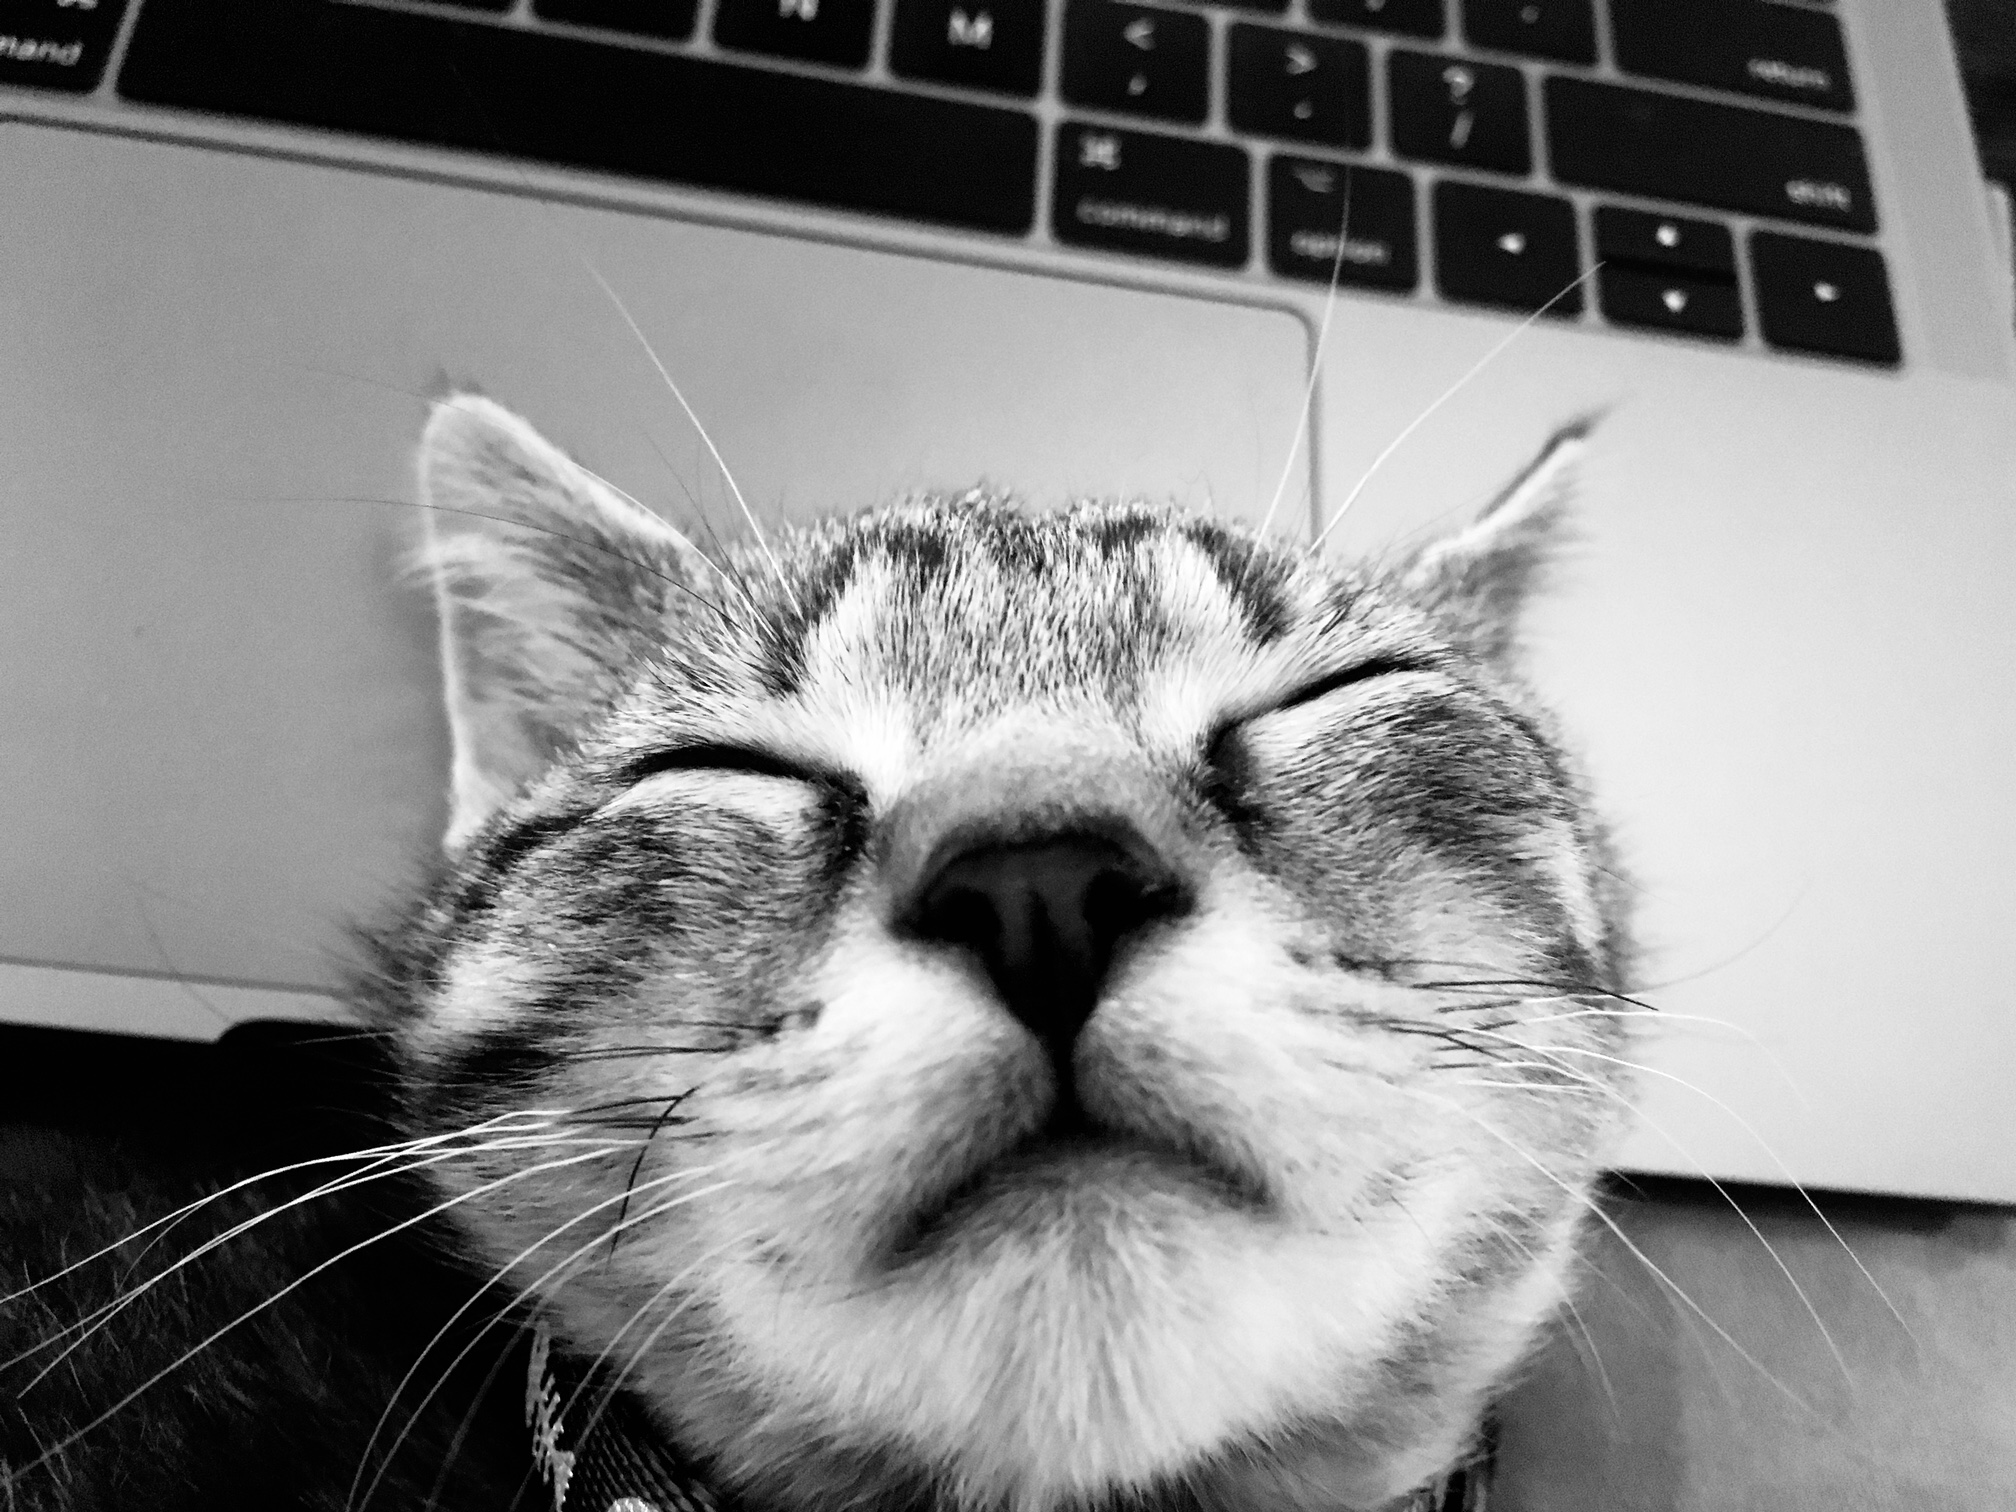 Sleeping Cat on a computer keyboard